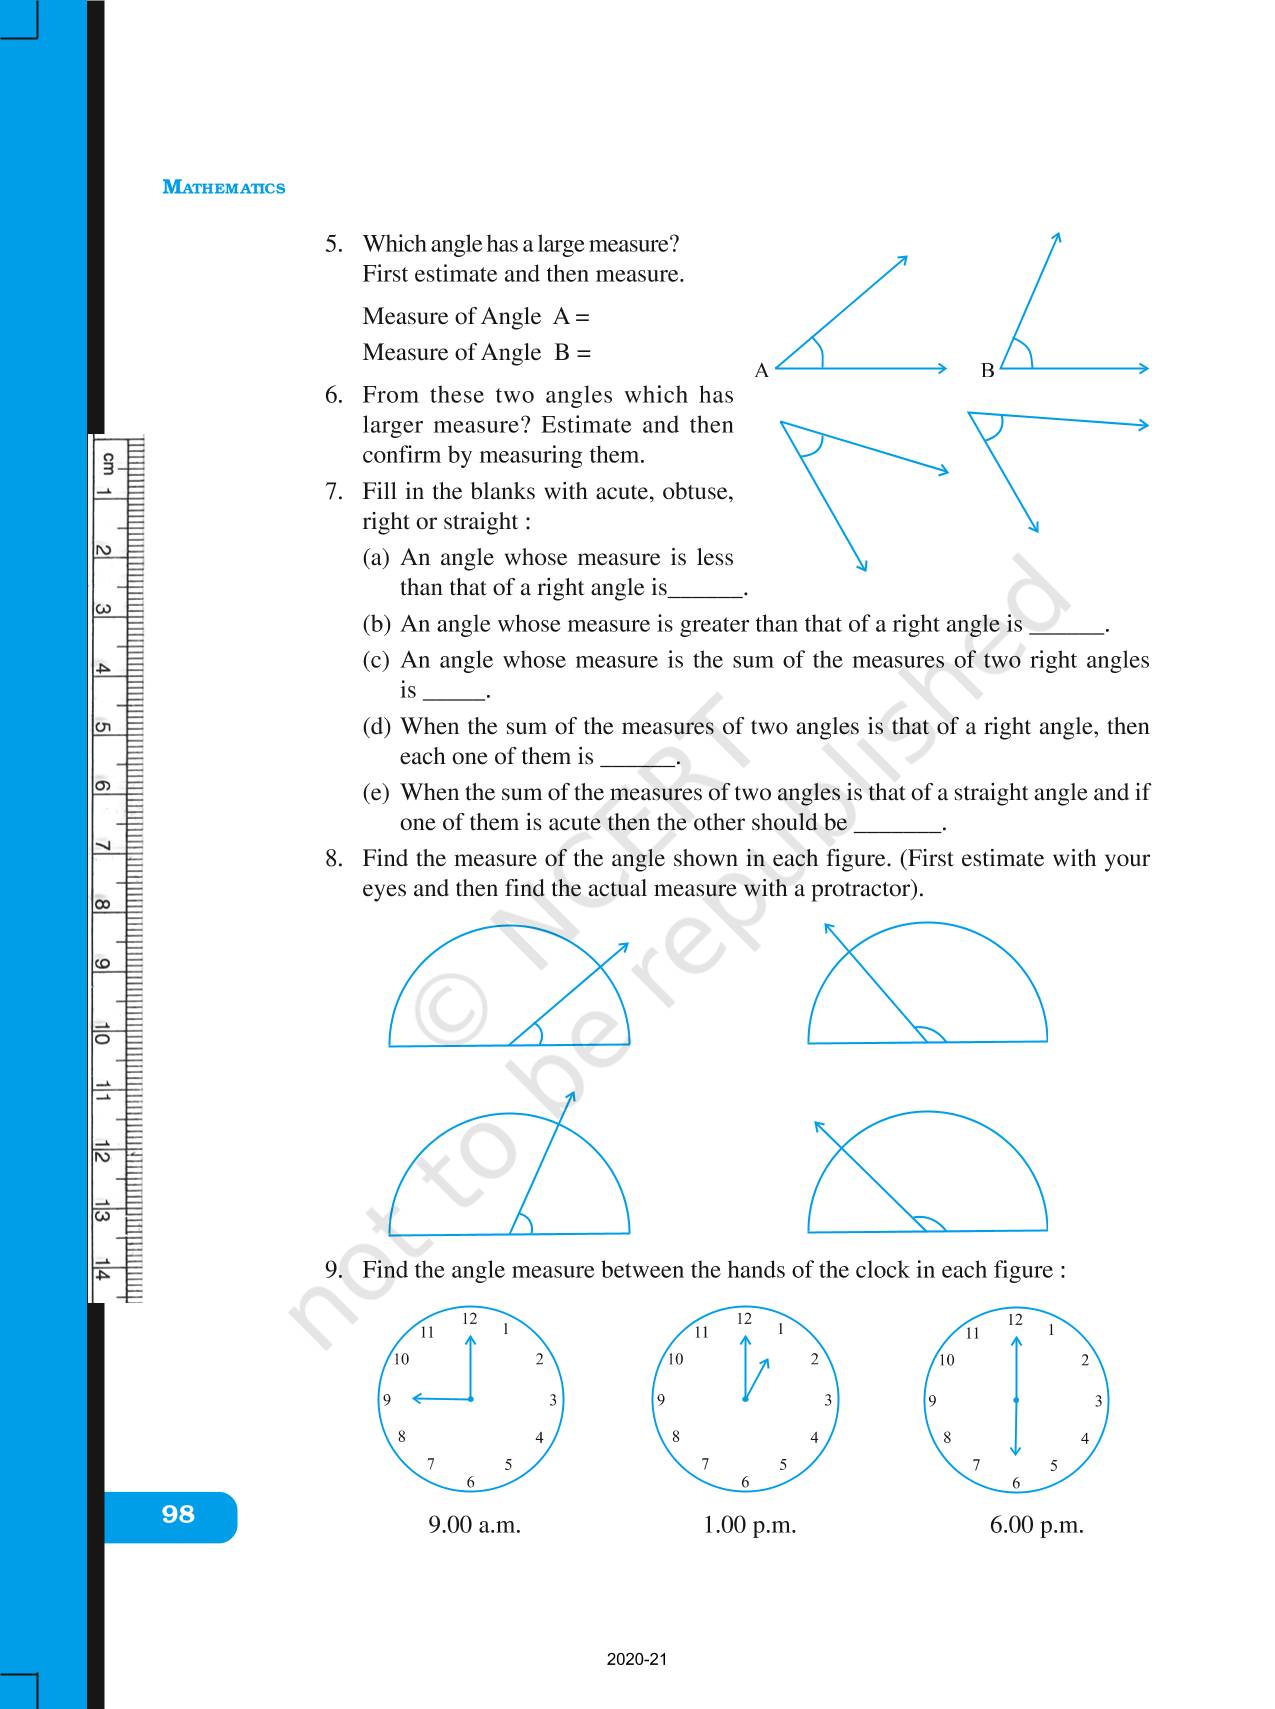 understanding-elementary-shapes-ncert-book-of-class-6-mathematics